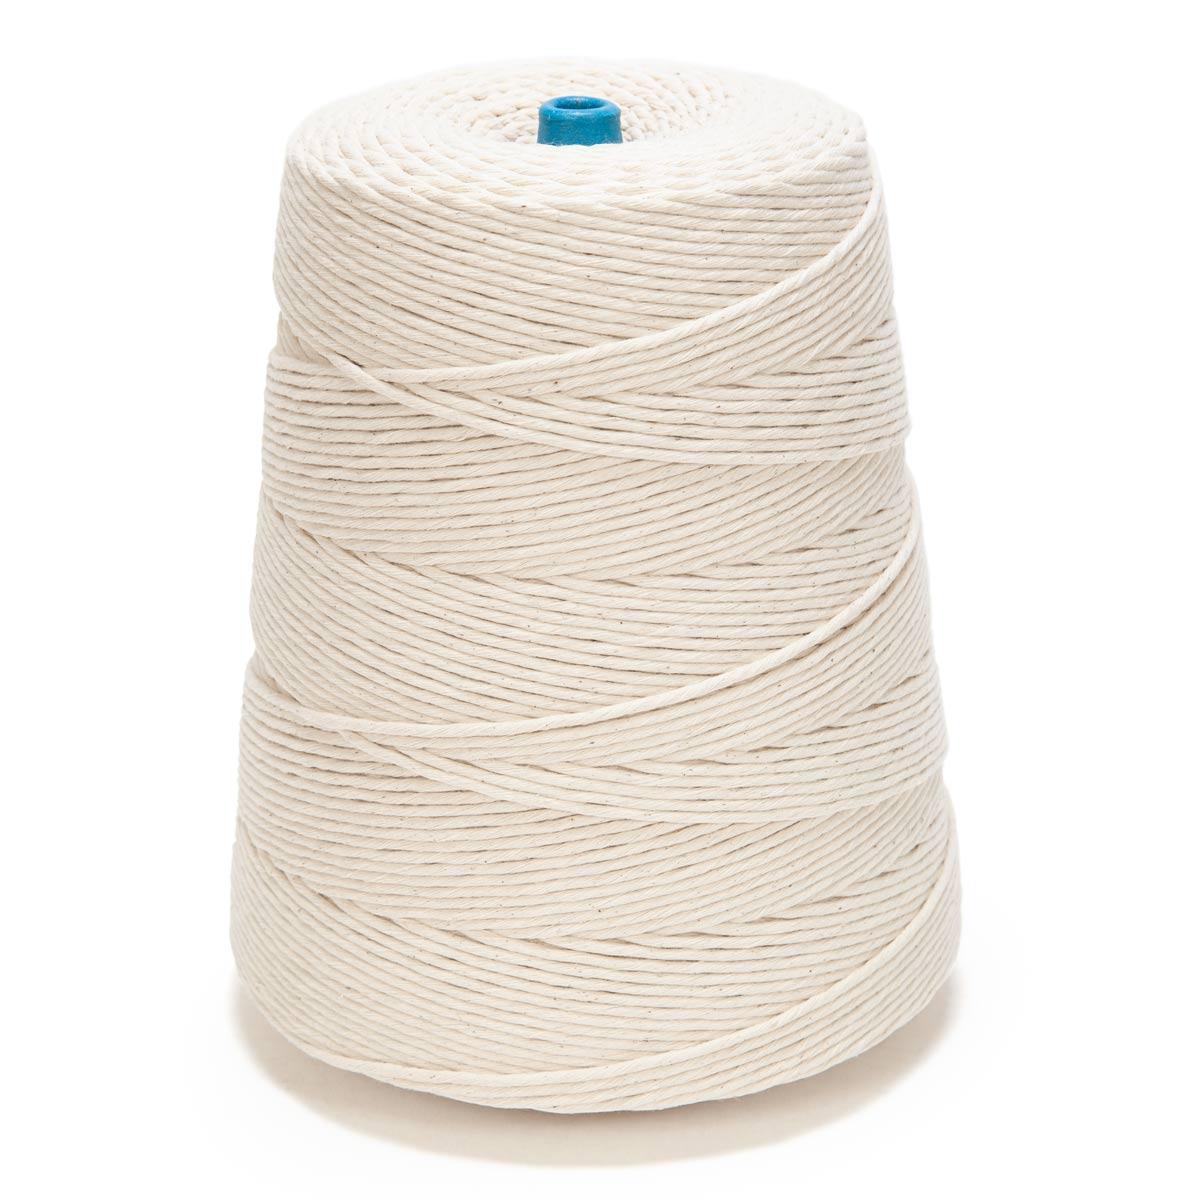 Soft Cotton Cords - Zero Waste - Single Strand 2 mm